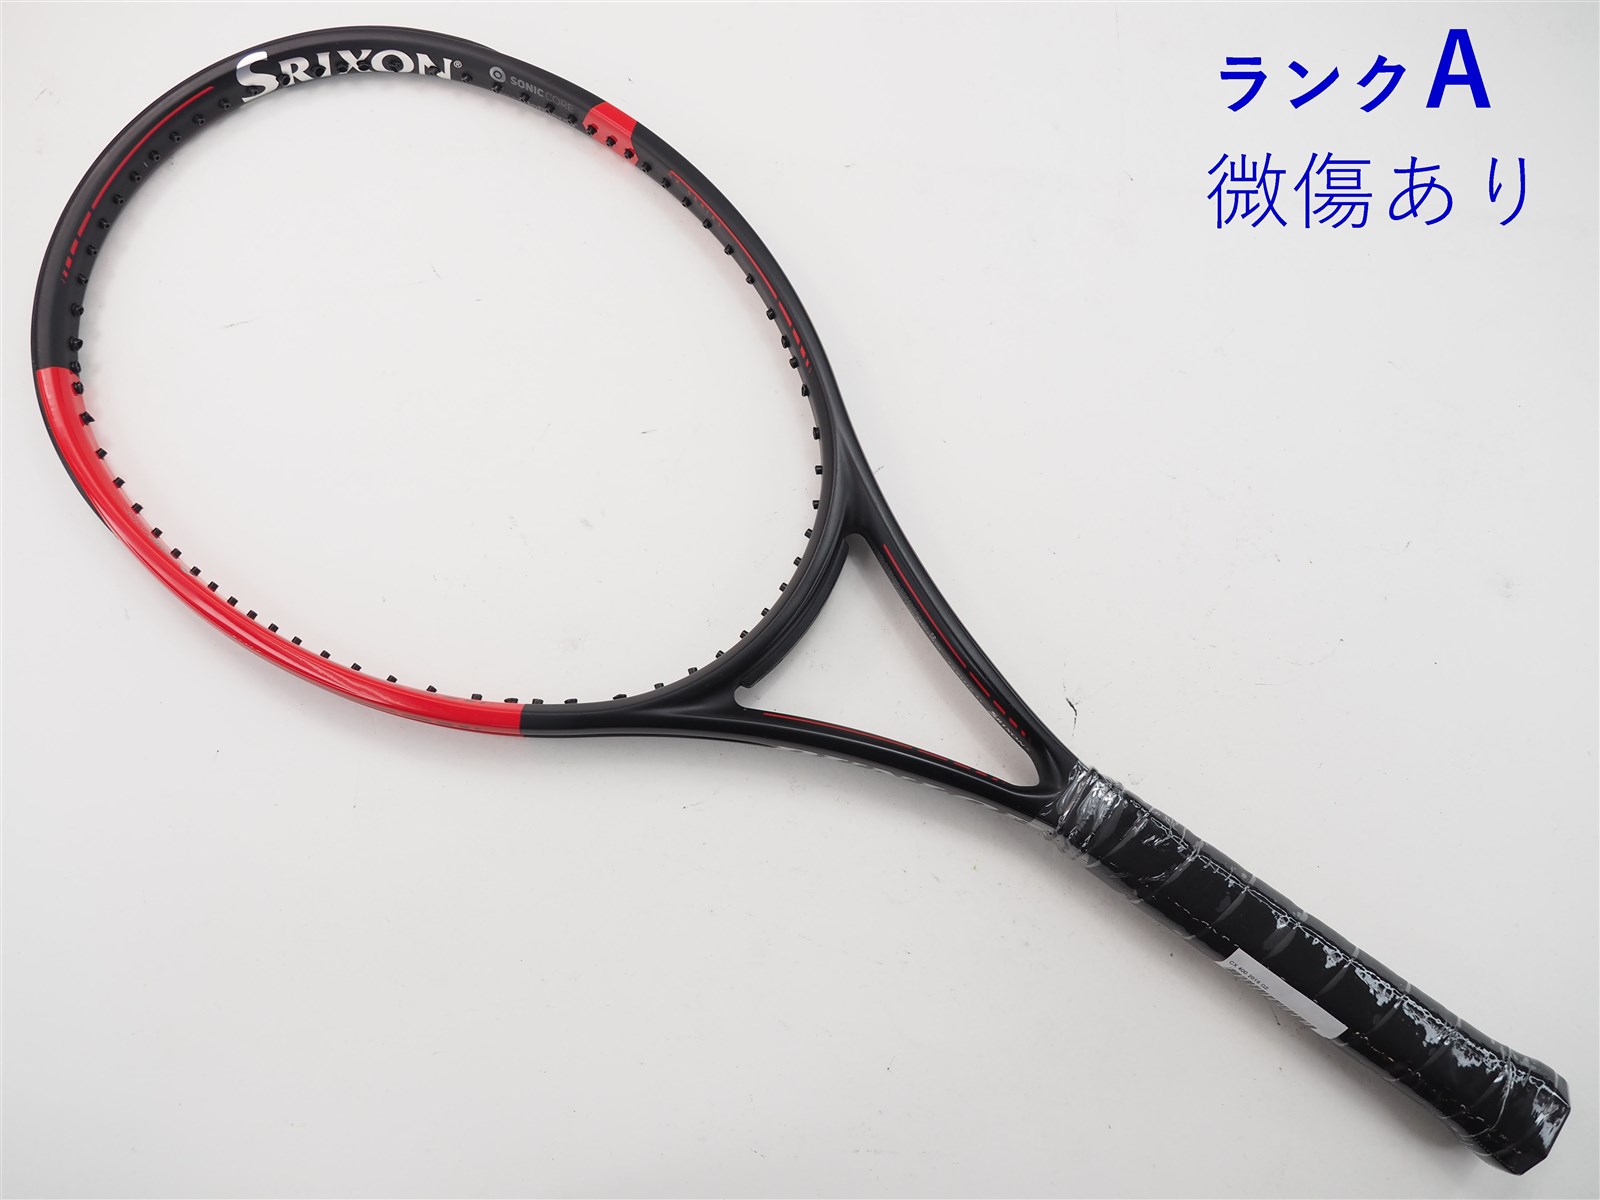 テニスラケット ダンロップ シーエックス 400 ジャパン リミテッド